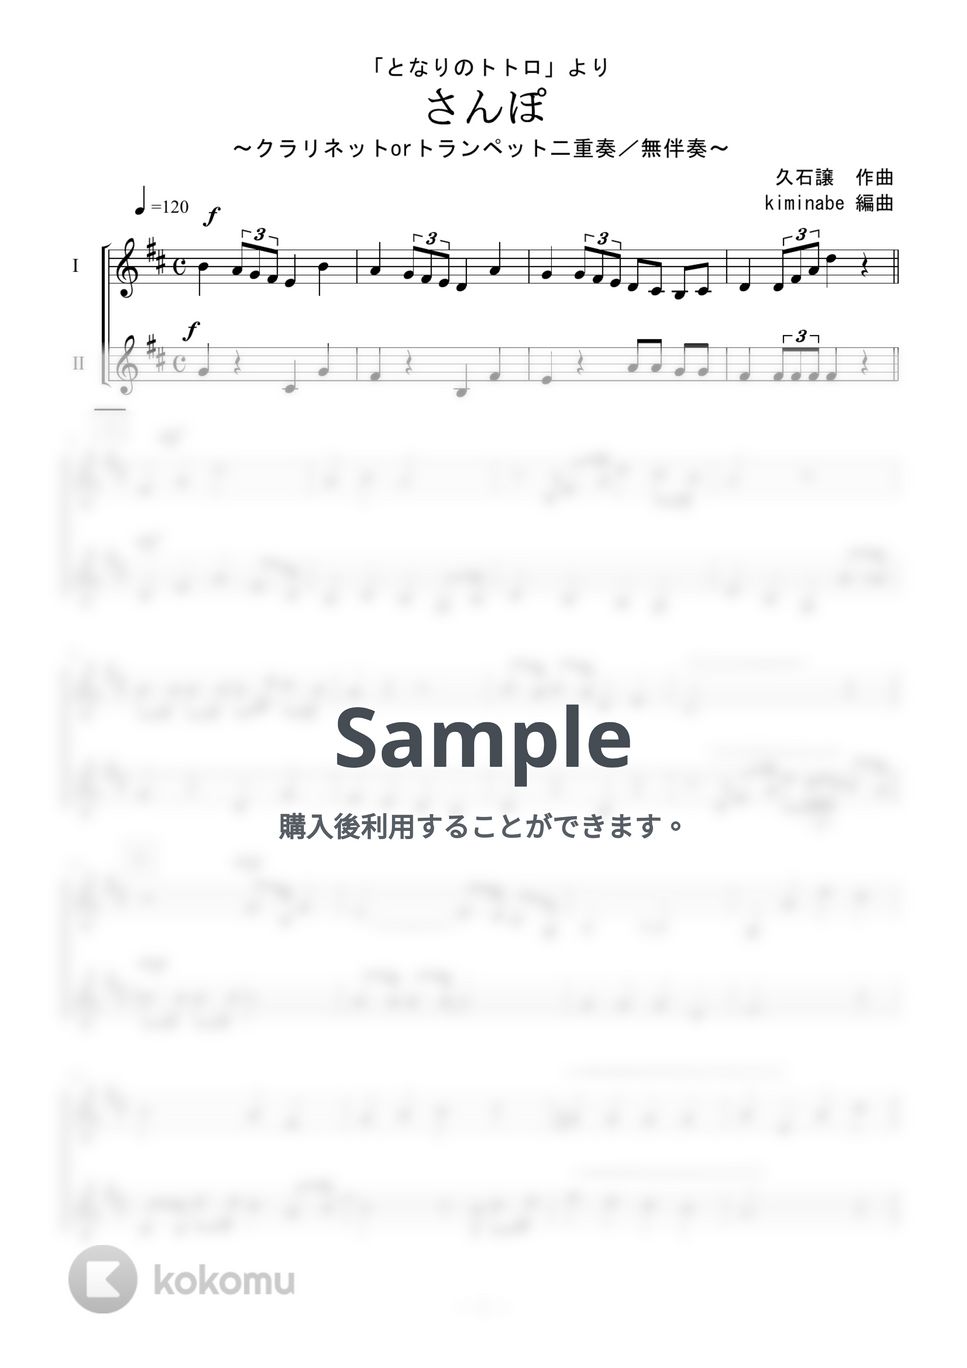 久石譲 - さんぽ (クラリネットorトランペット二重奏／無伴奏) by kiminabe